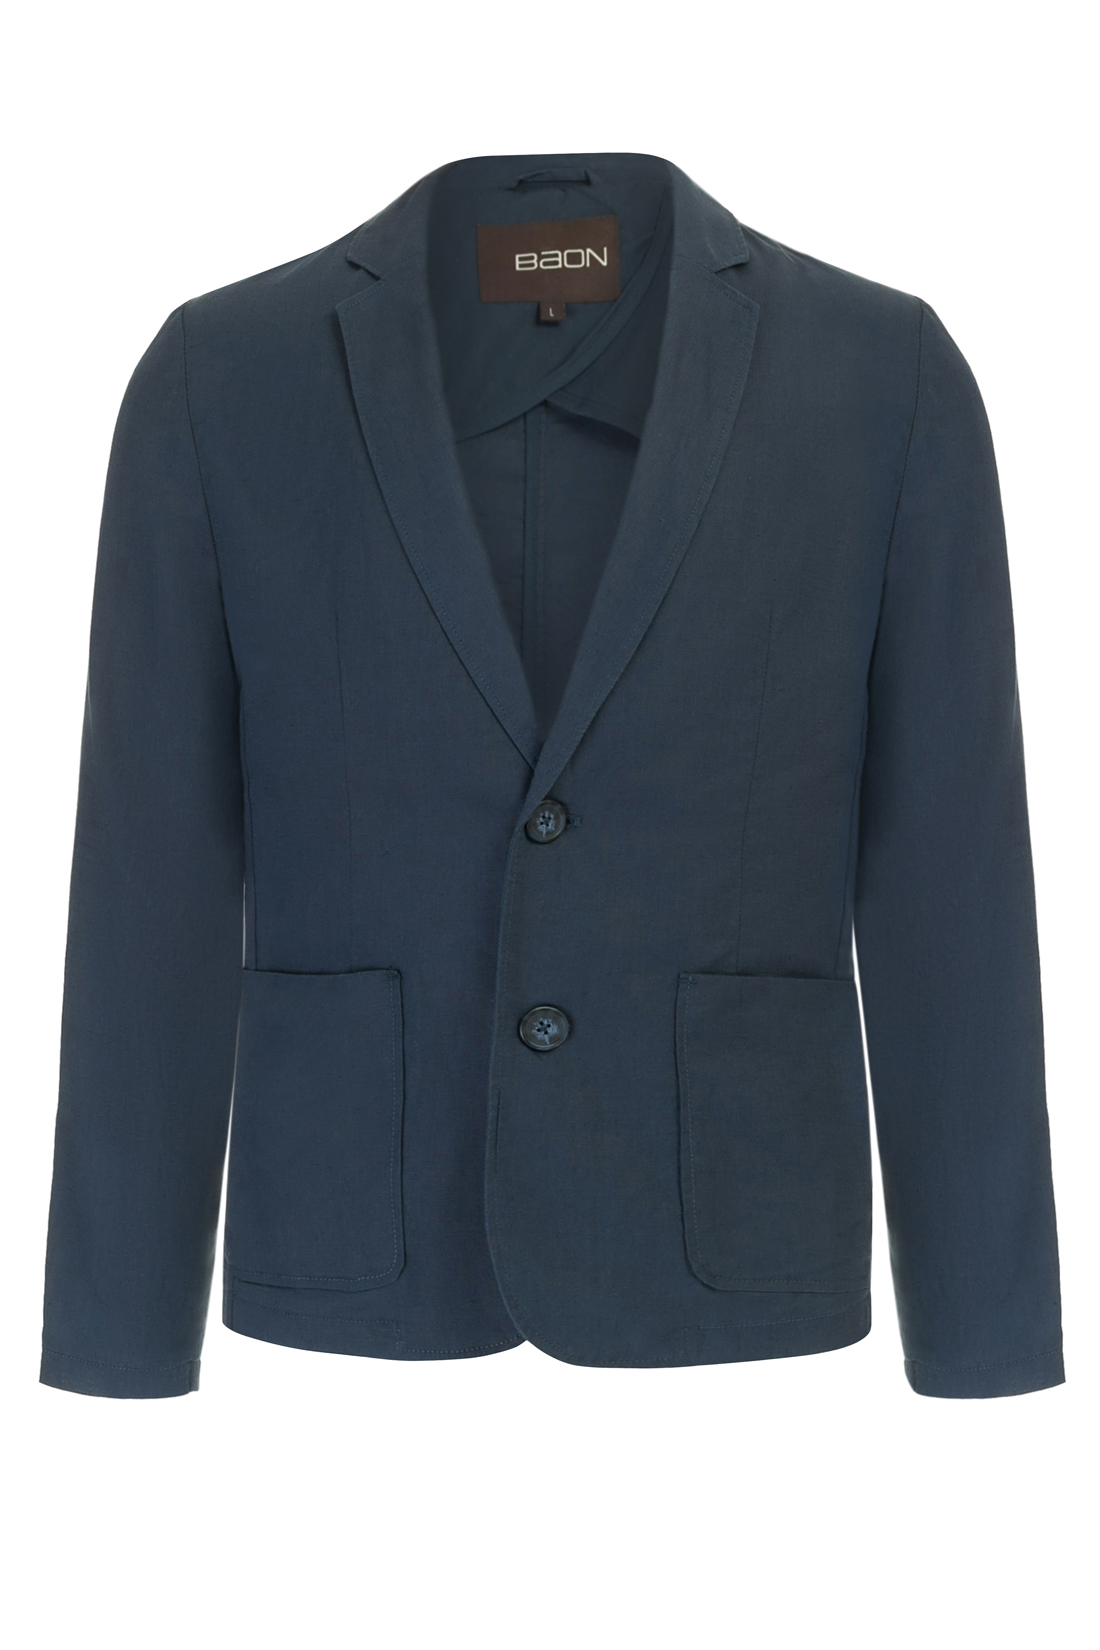 Пиджак из натуральных волокон (арт. baon B627002), размер S, цвет синий Пиджак из натуральных волокон (арт. baon B627002) - фото 4